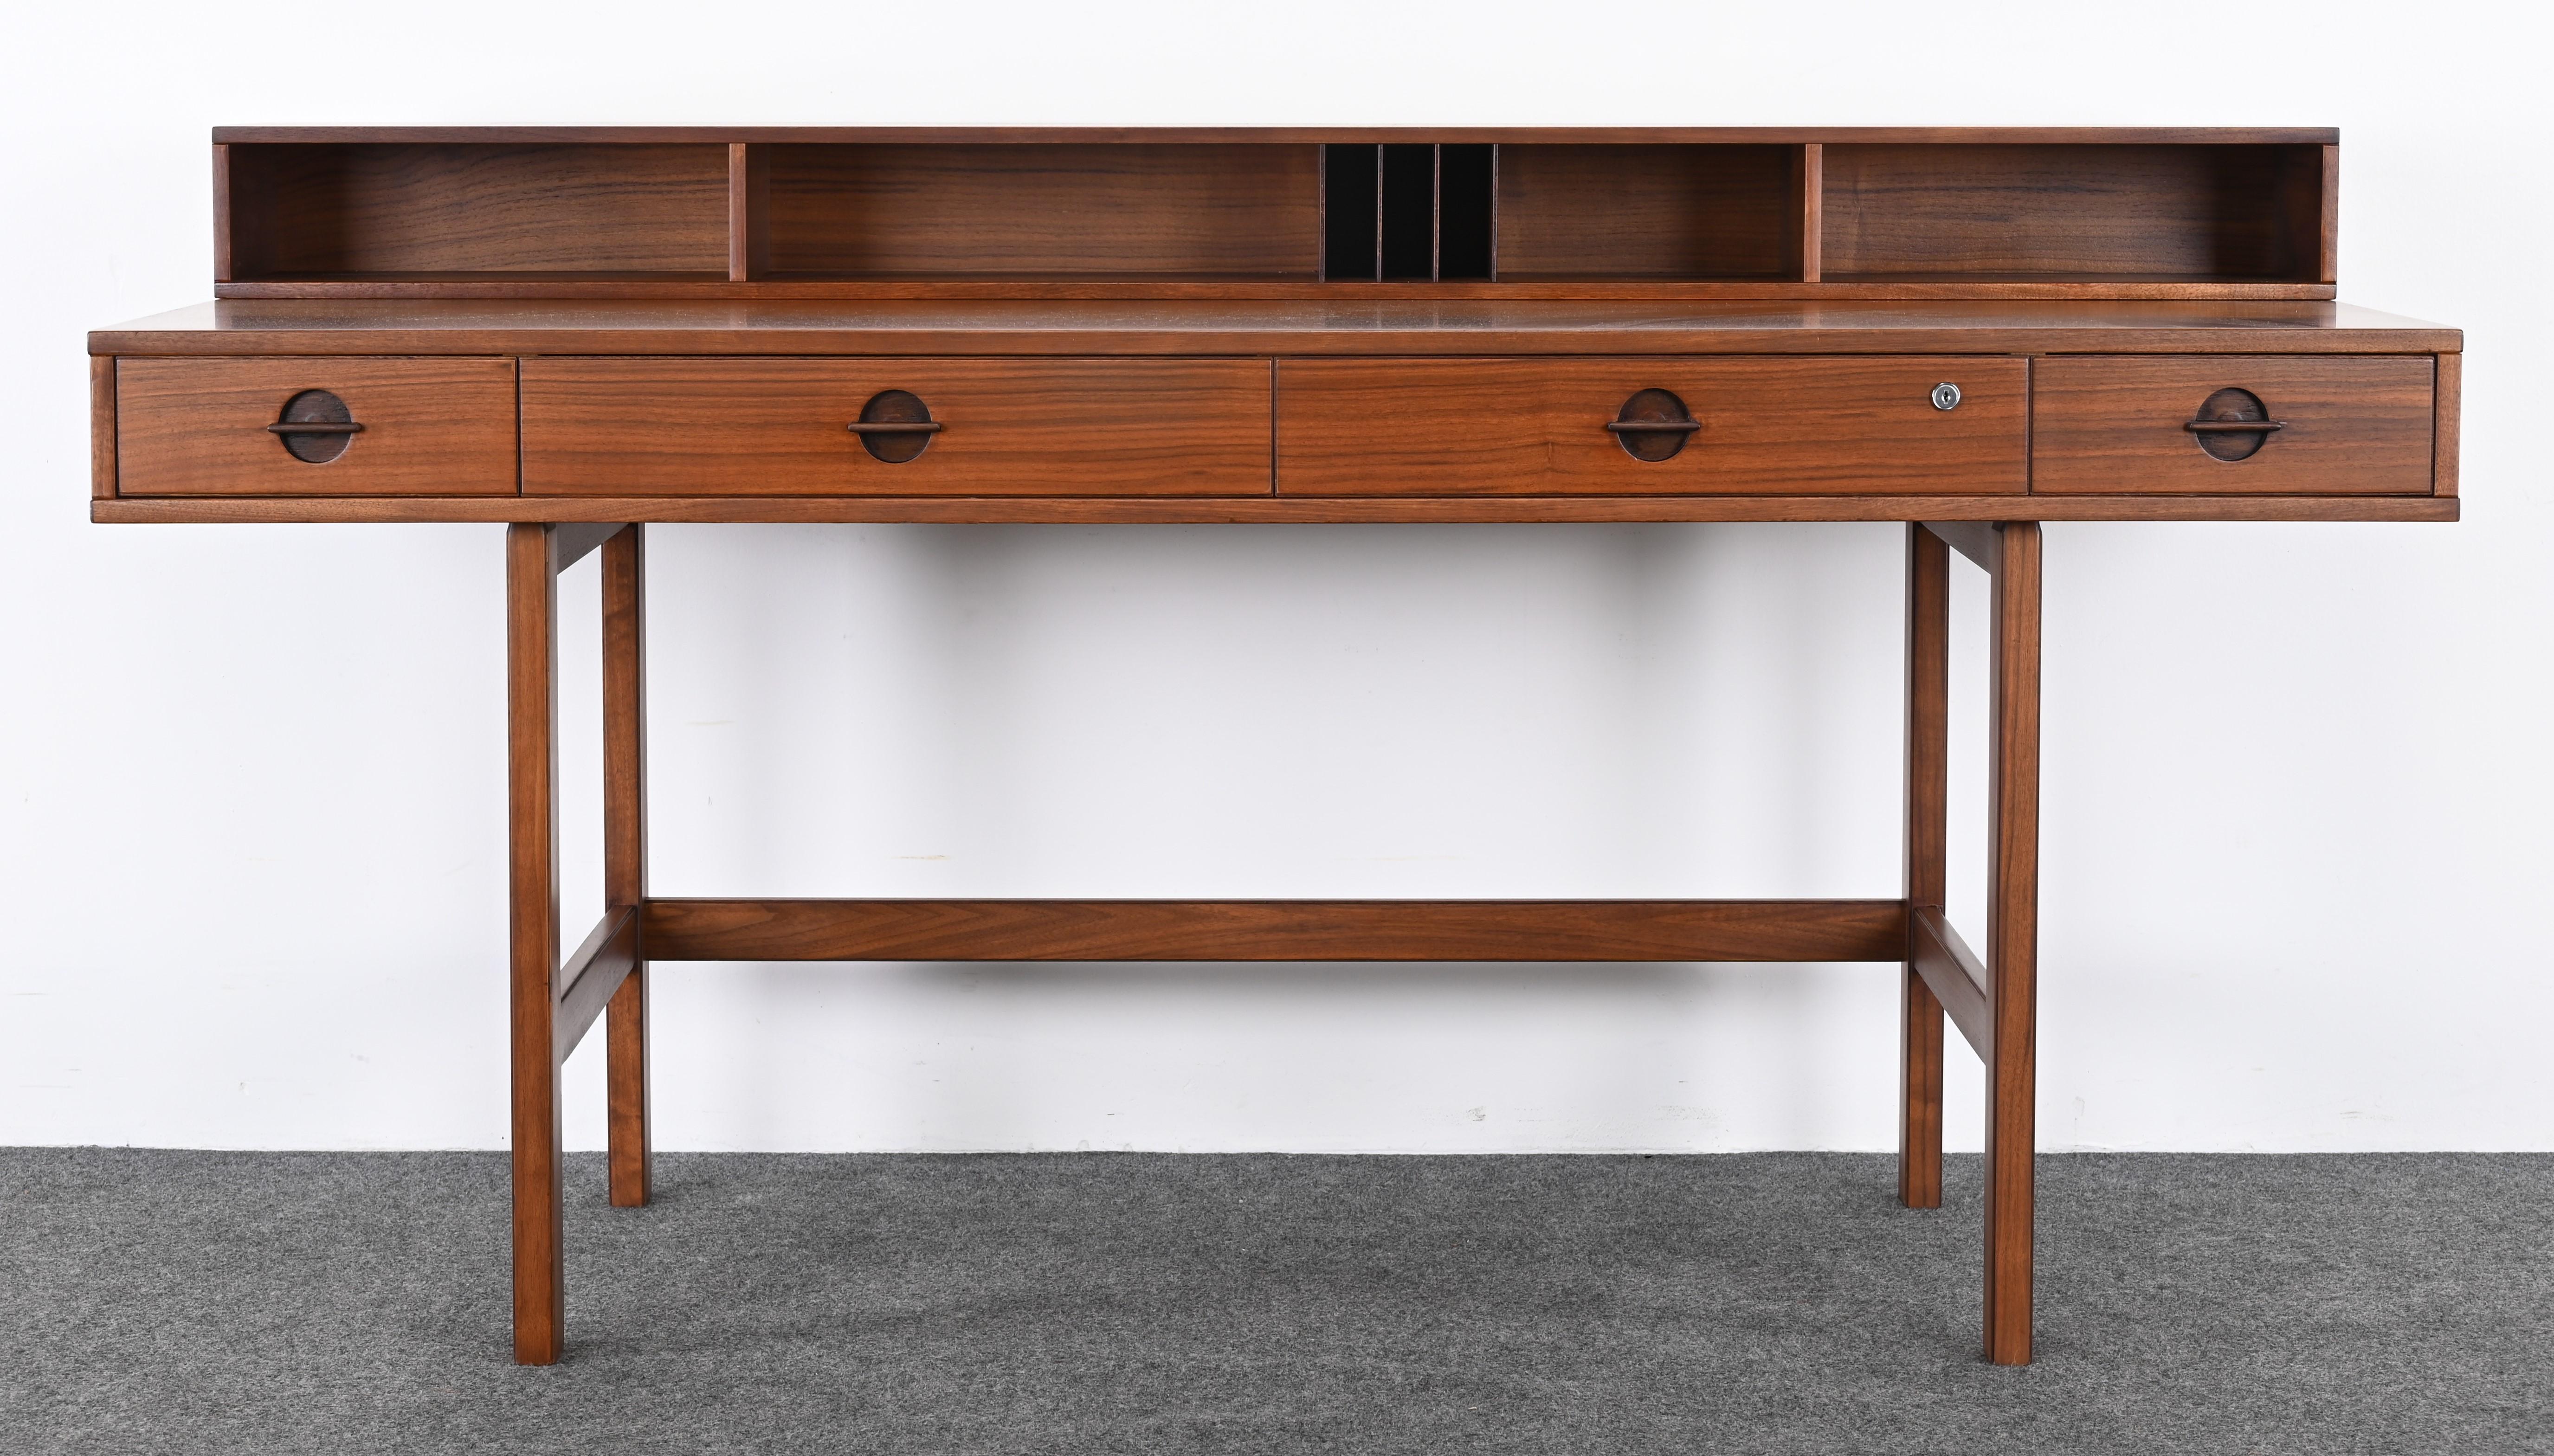 Ein schöner erweiterbarer dänischer Modern-Schreibtisch aus Nussbaumholz mit klappbarer Tischplatte von Jens Quistgaard für Peter Lovig Nielsen. Dieser Schreibtisch kann entweder nach unten geklappt werden, um viel Platz zu haben, oder nach oben